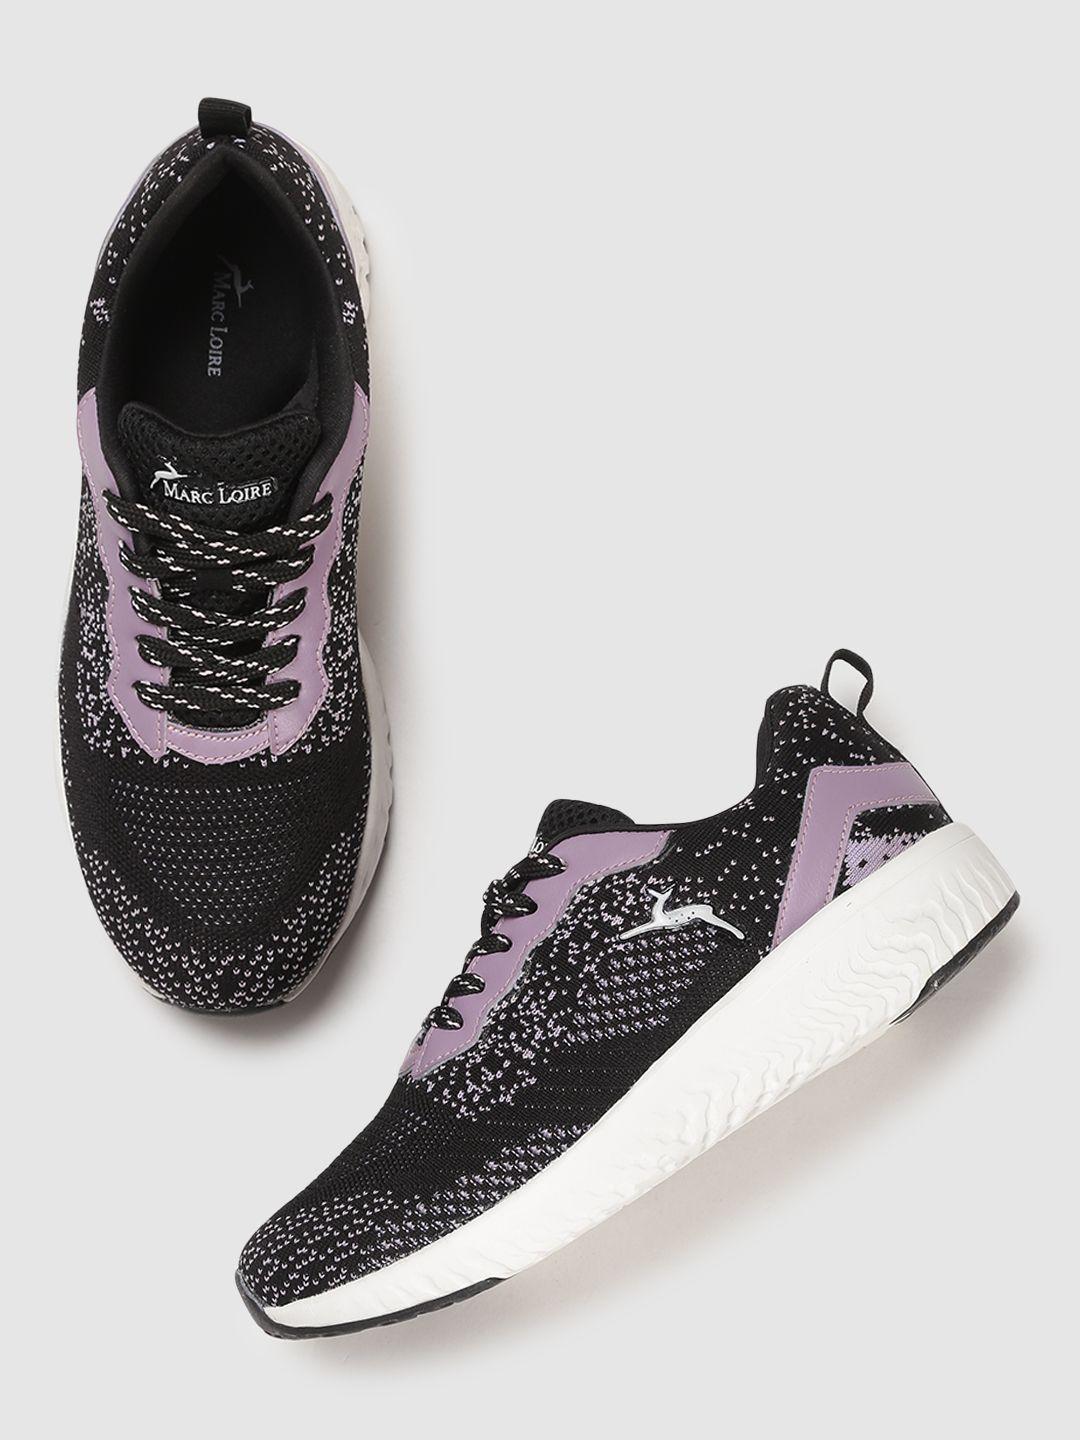 marc loire women black & purple woven design lightweight sneakers